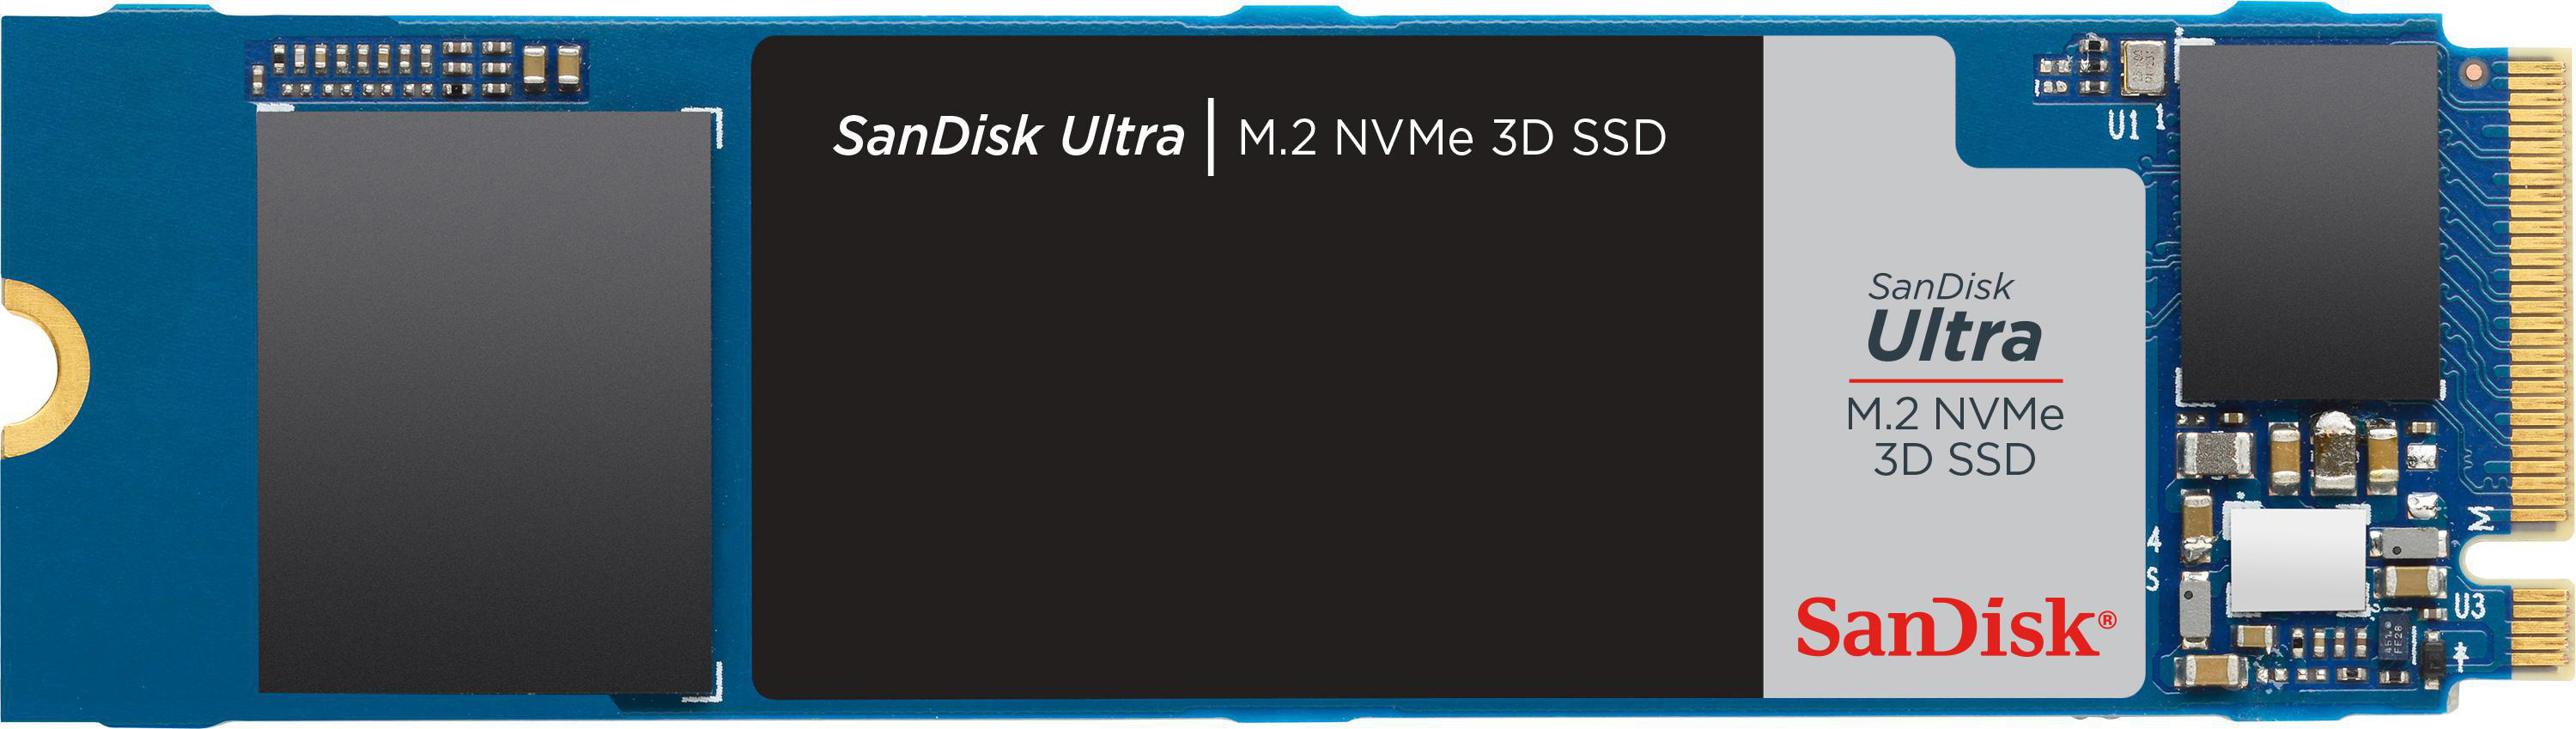 SANDISK Ultra 3D Speicher, via M.2 Interner intern Speicher 1 NVMe, TB